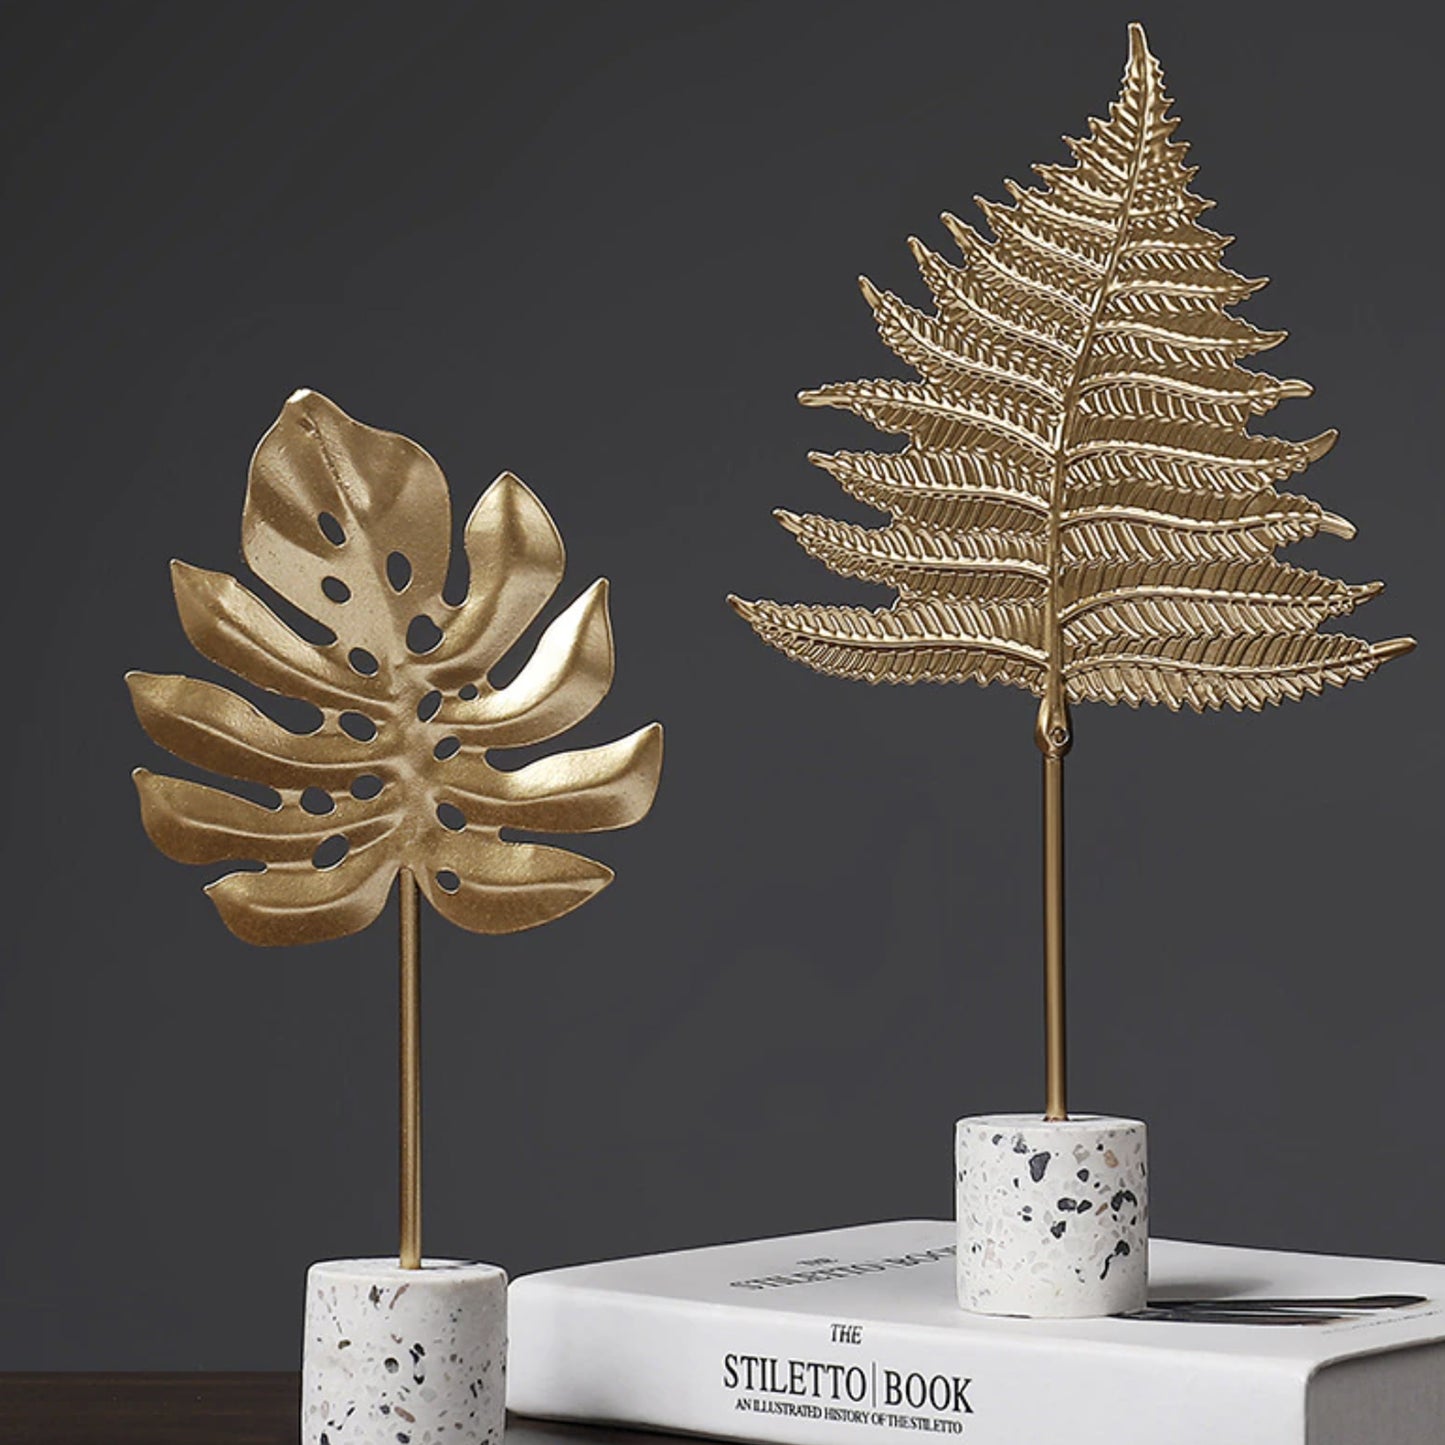 Gold Leaf Ornaments